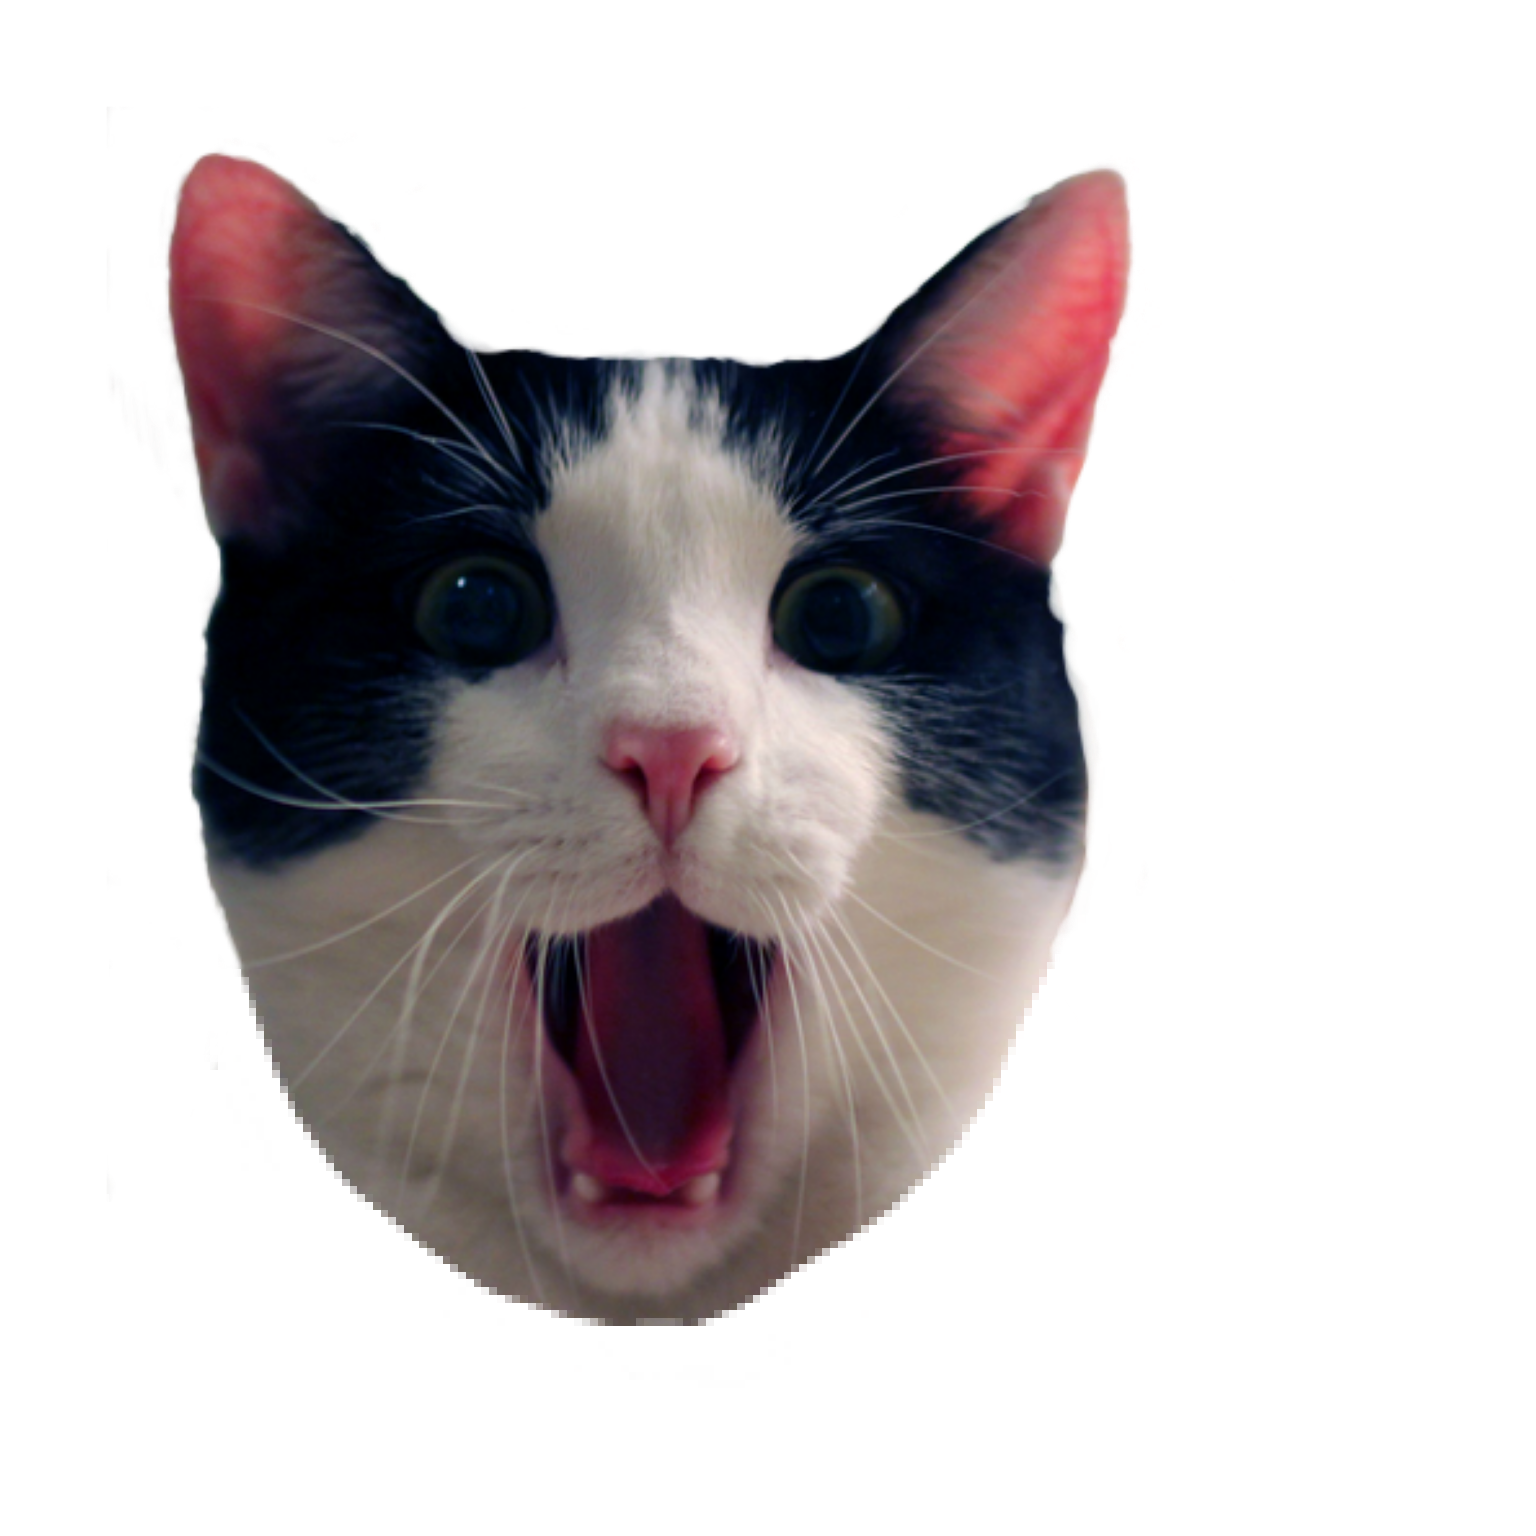 Pop Cat Meme Transparent : "Popcat | Crazy Cat Meme Pop Art" Sticker by